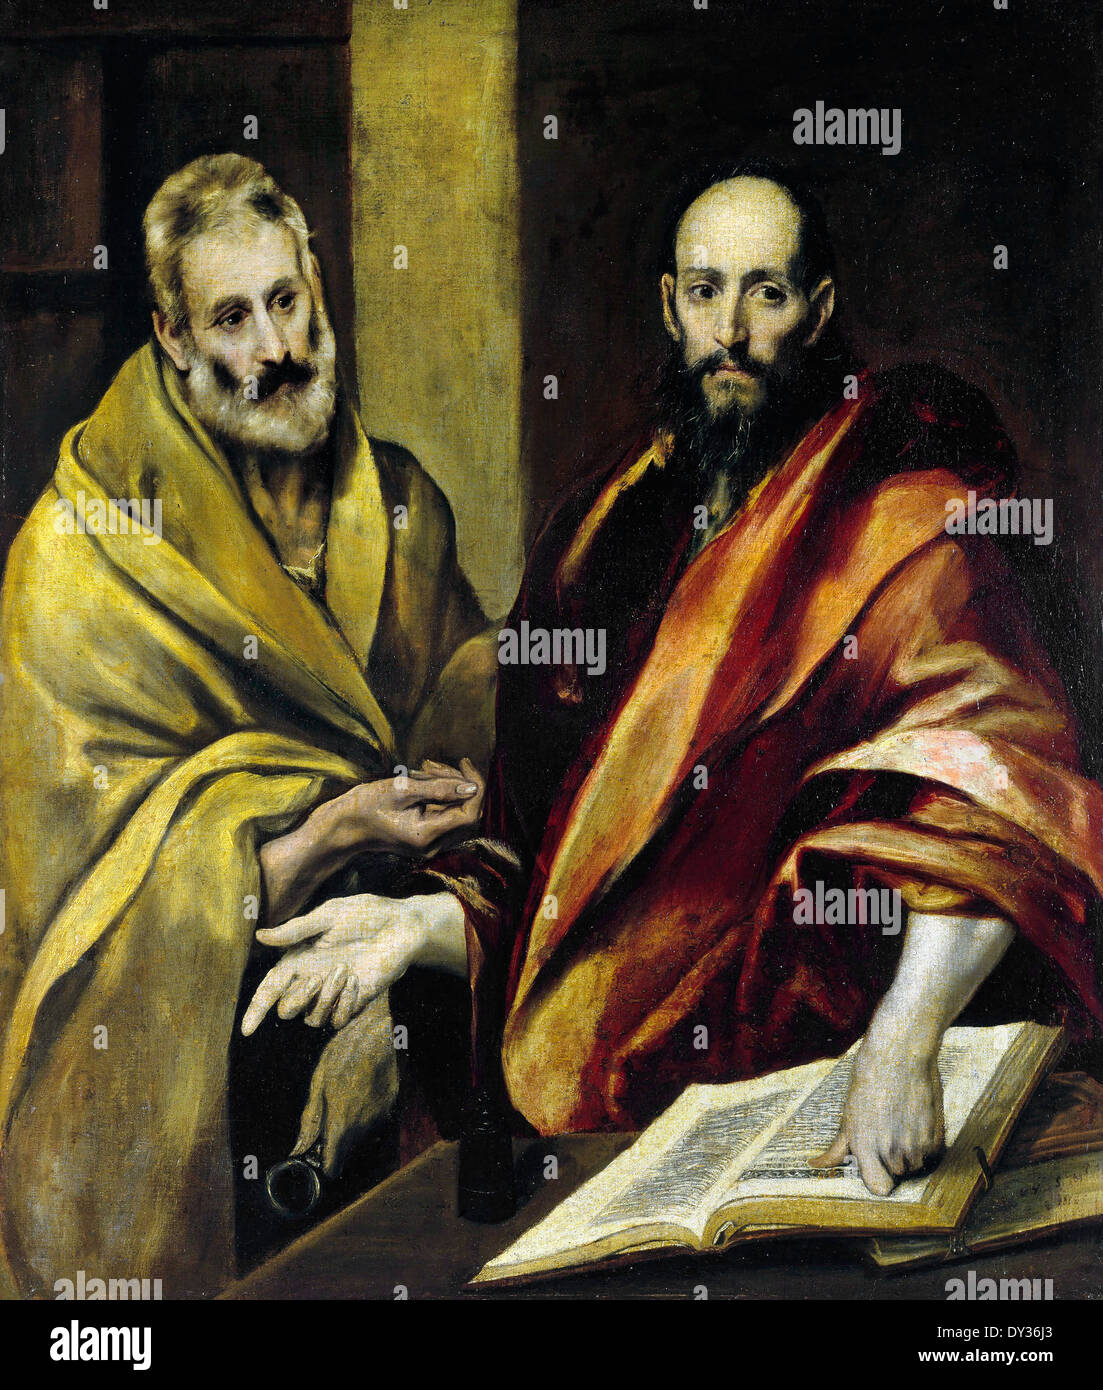 El Greco, Saint Pierre et Paul, 1587-1592 Huile sur toile. Musée de l'Ermitage, Saint-Pétersbourg, Russie, Banque D'Images